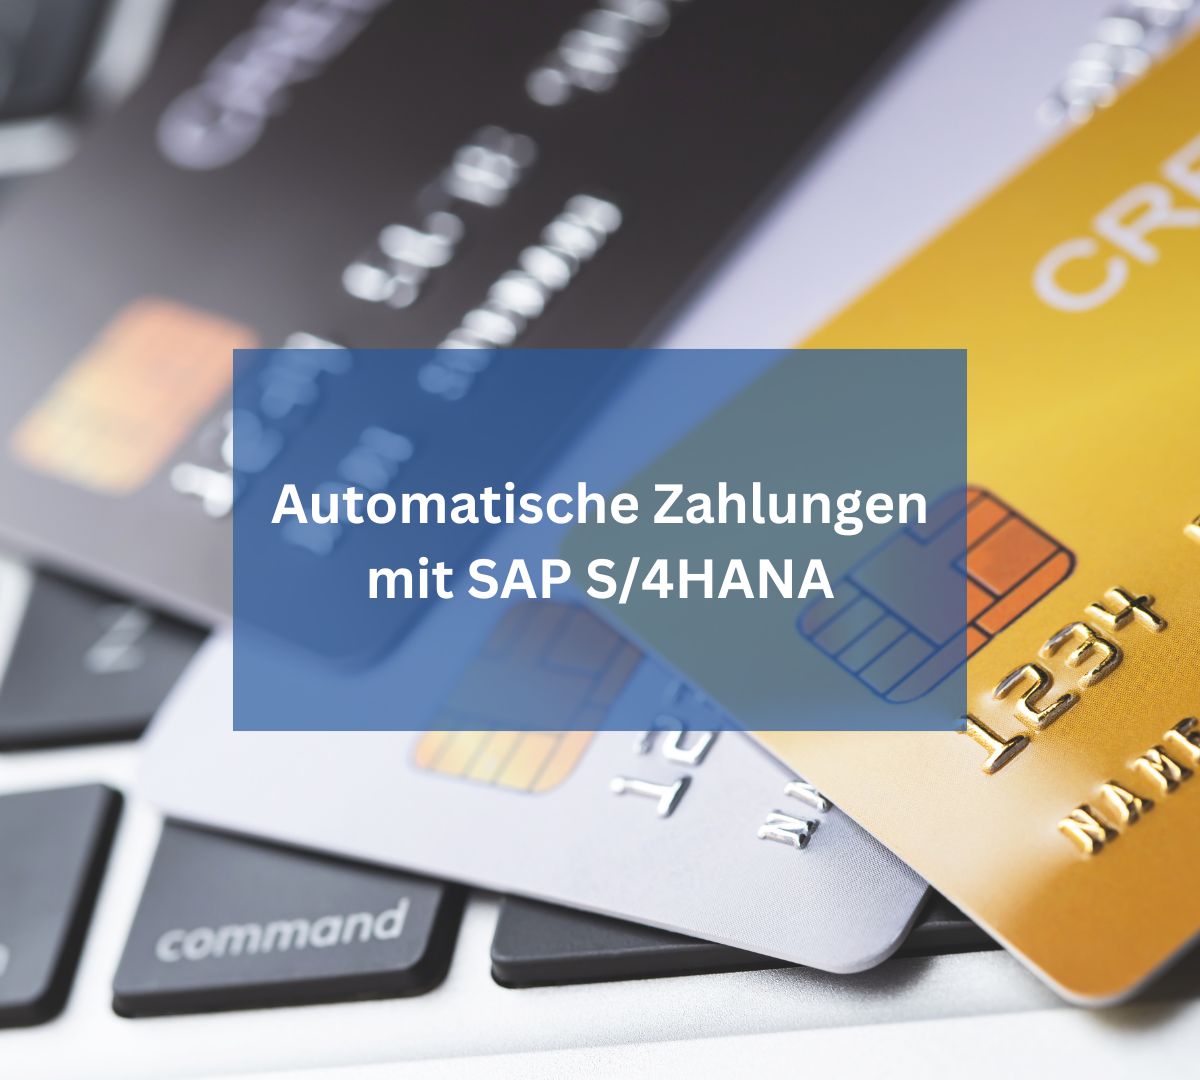 Automatische Zahlungen mit SAP S/4HANA: Effizienz neu definiert